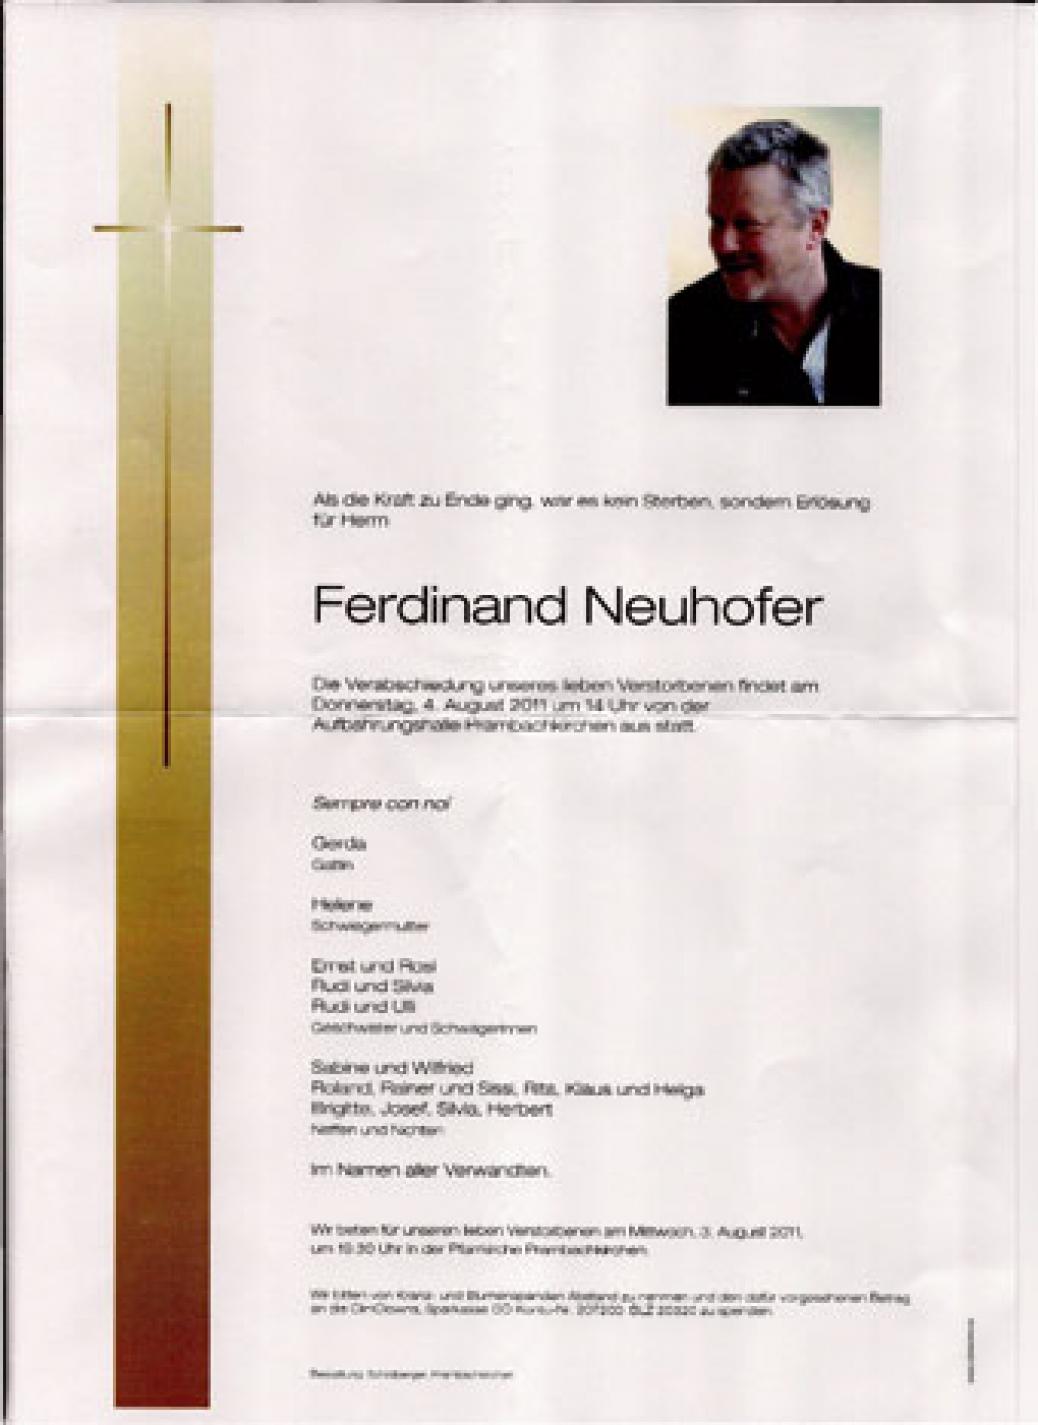 Wir trauern um unser Mitglied “Ferdinand Neuhofer”